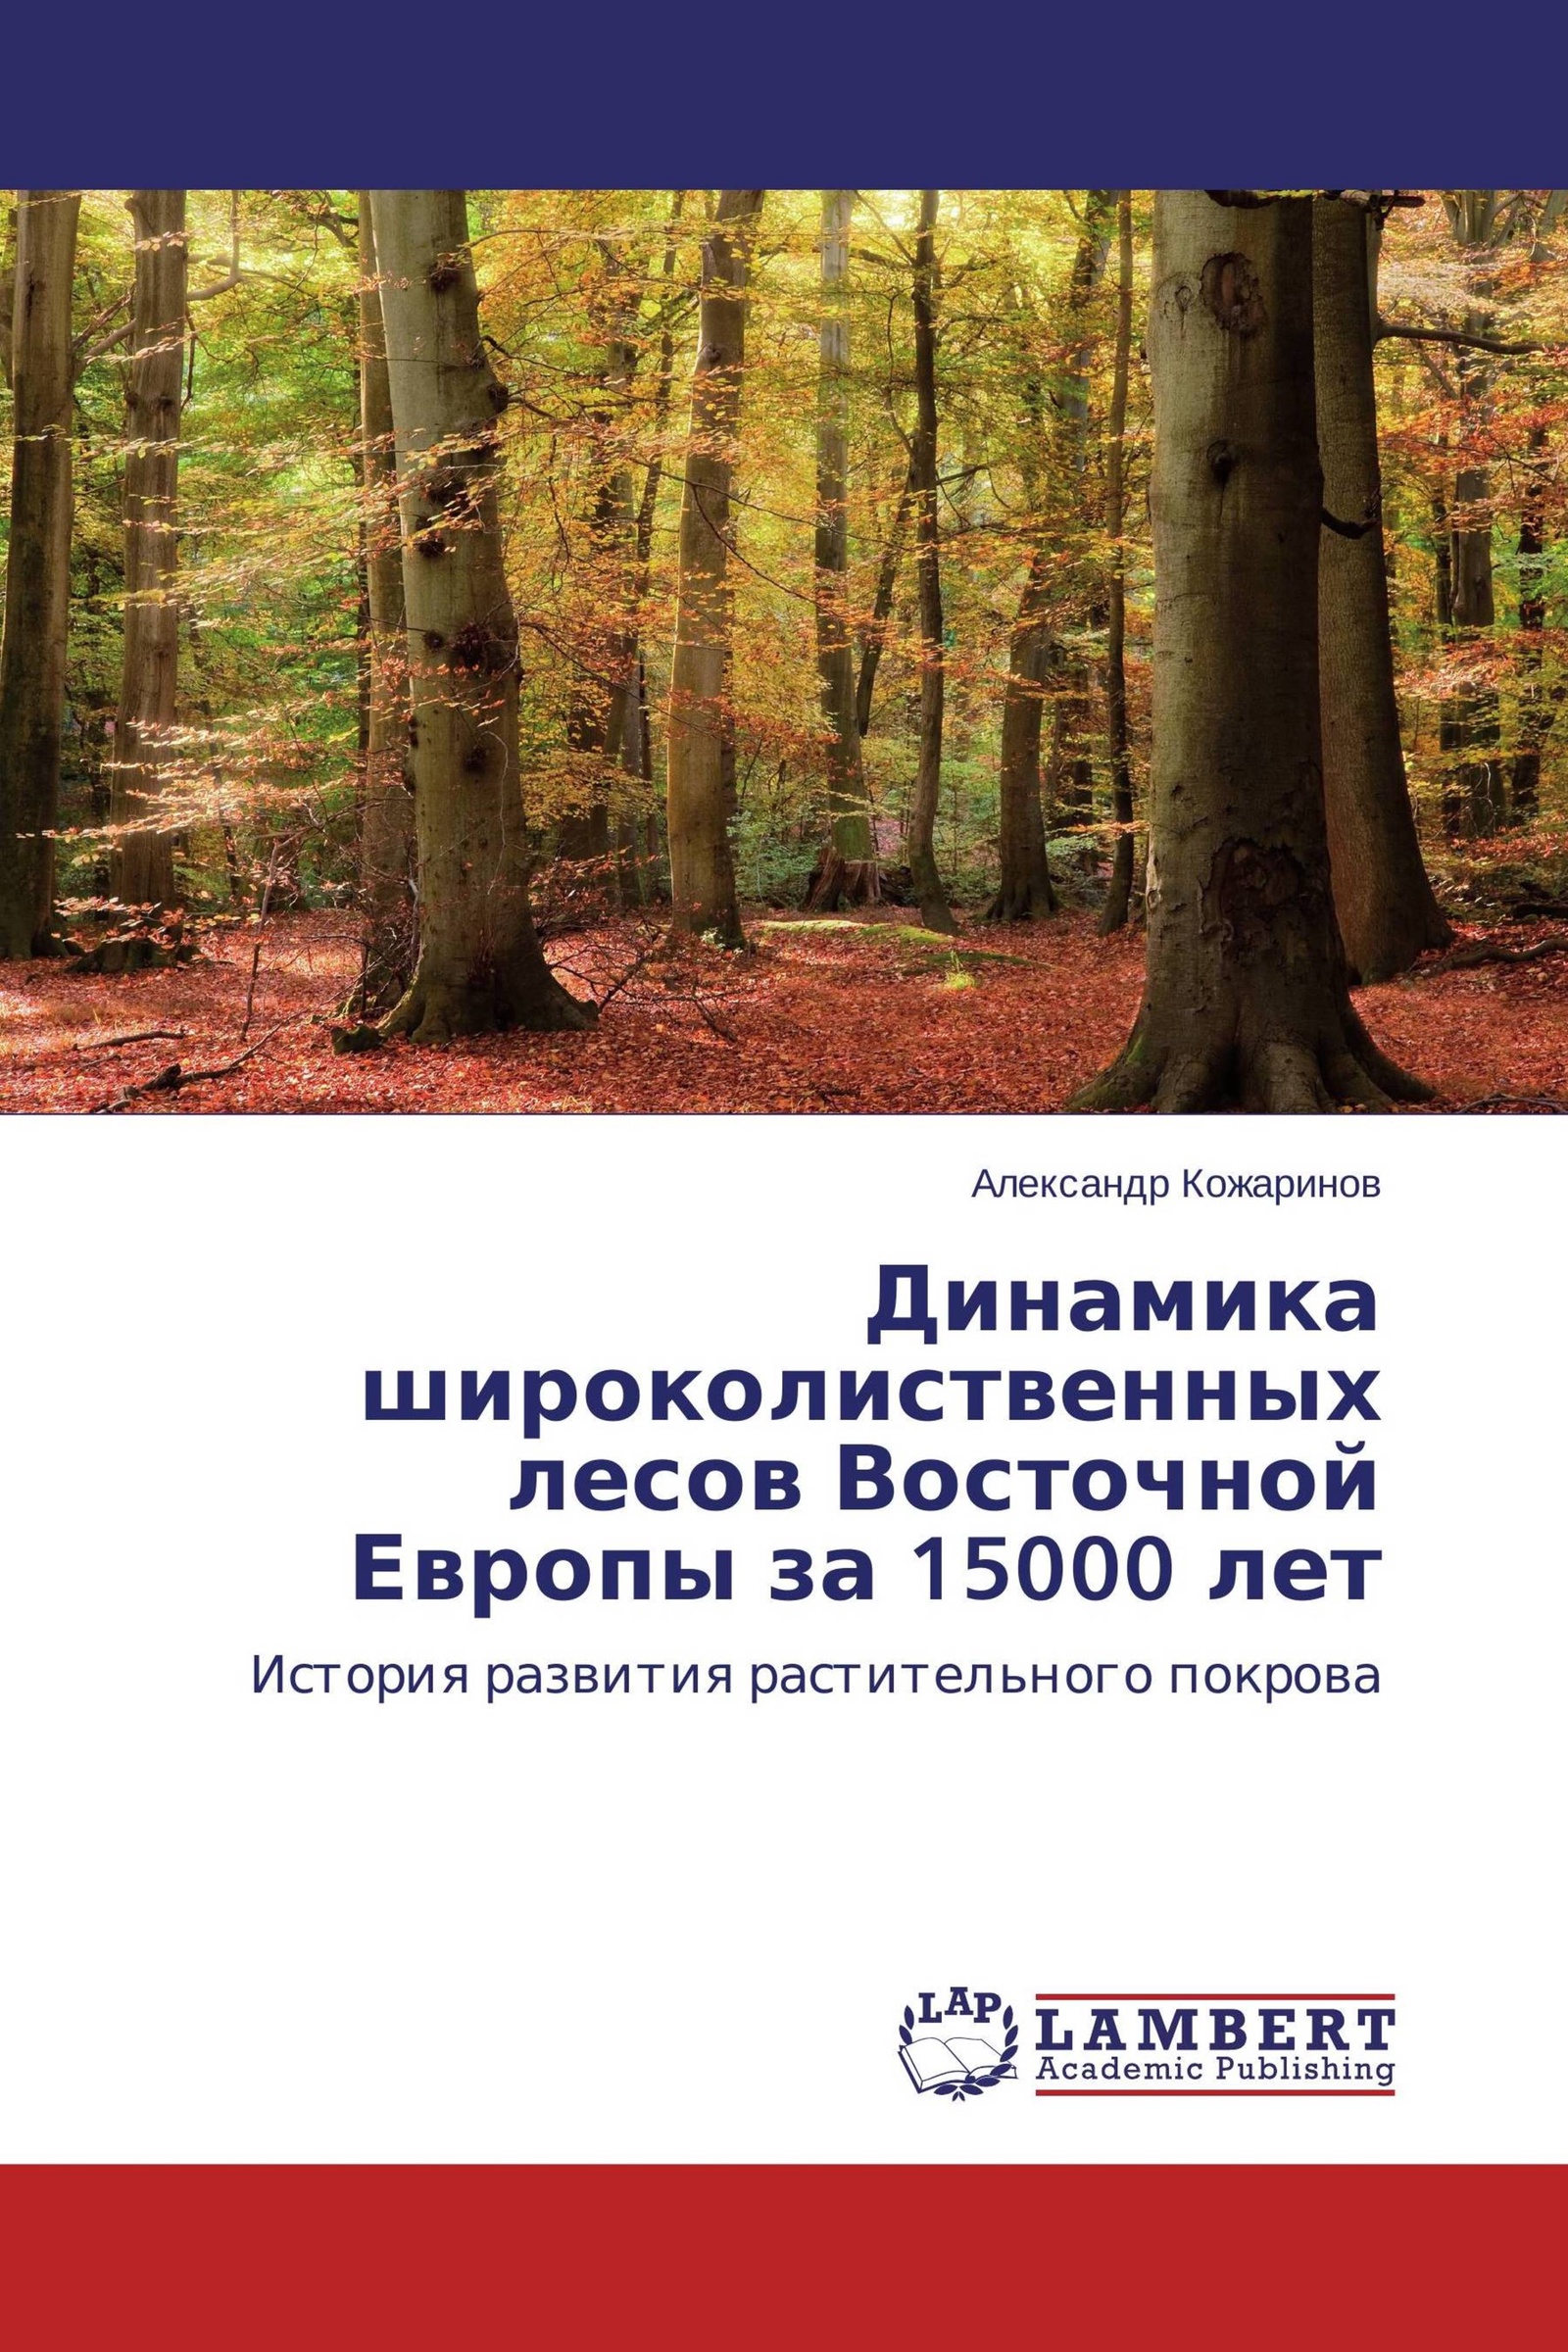 Доклад по теме Растительный покров в Европе